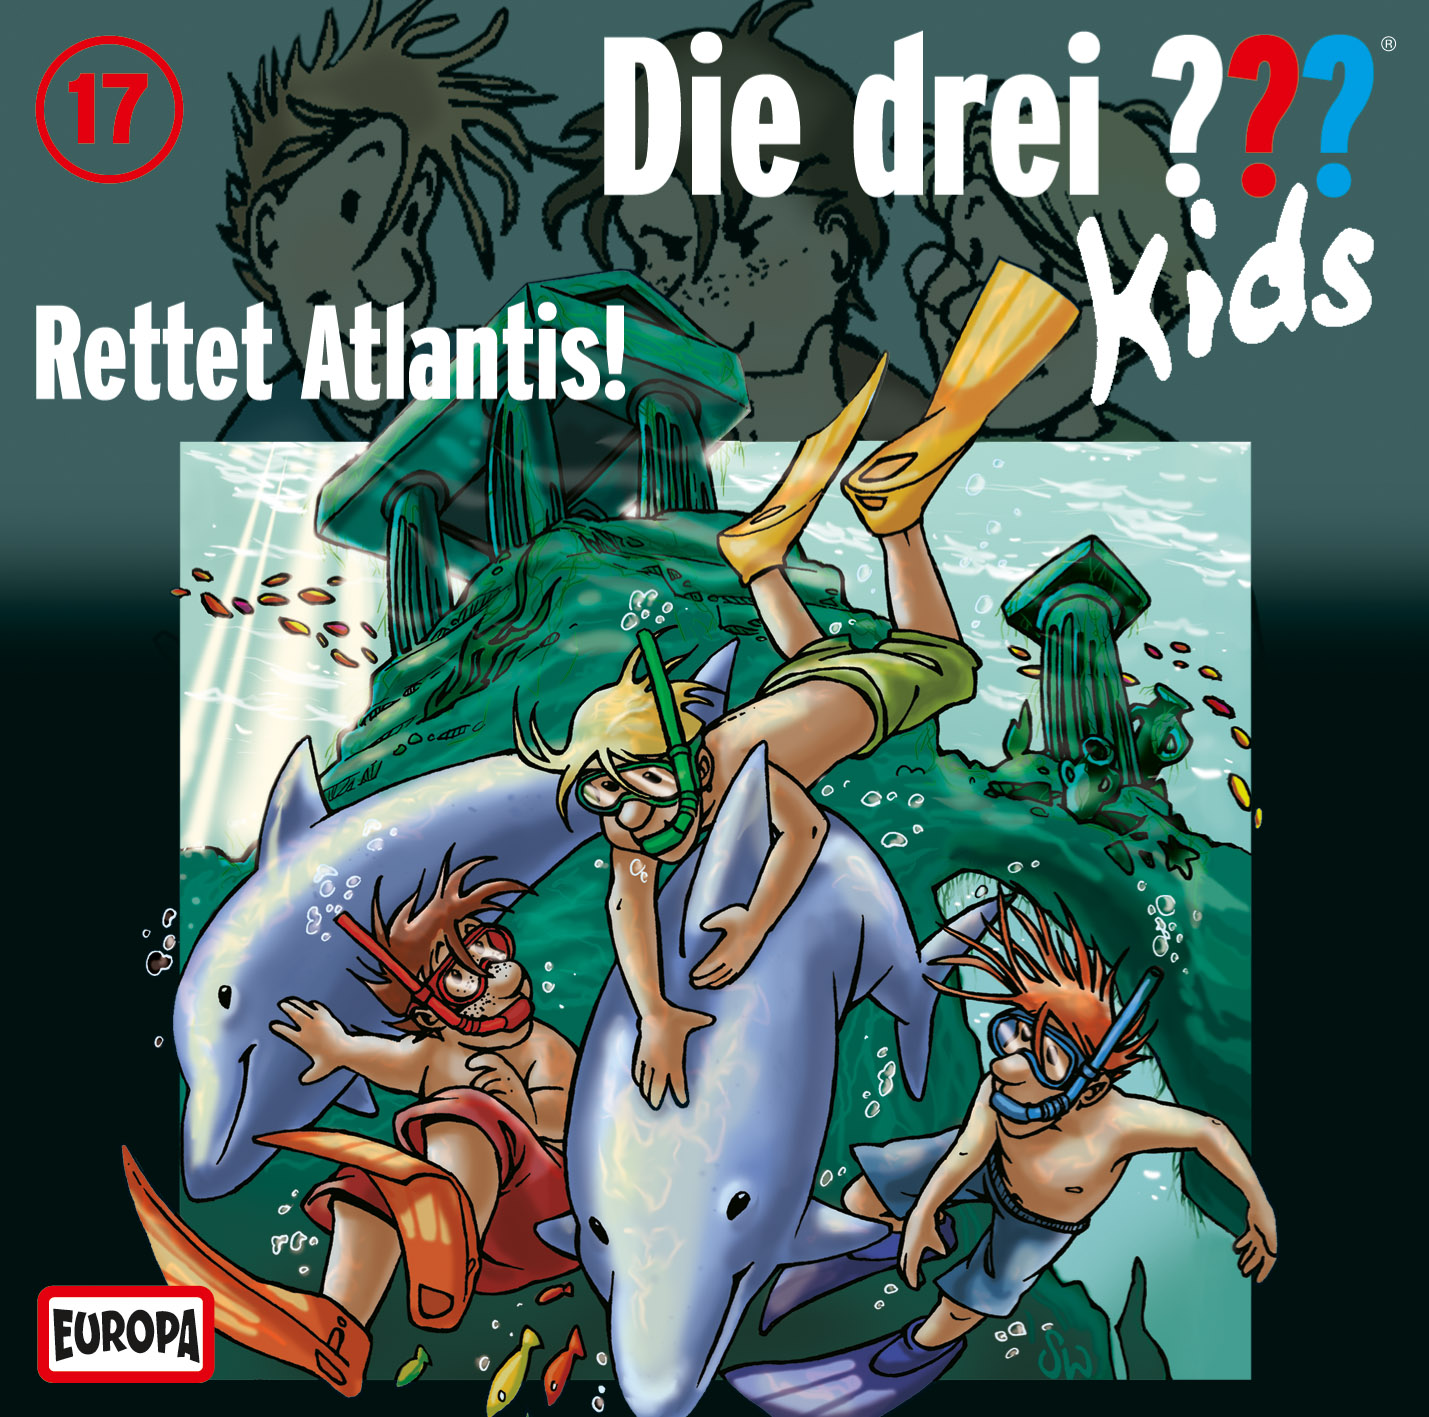 Die Drei ??? (Fragezeichen) Kids, Hörspiel-Folge 17: Rettet Atlantis!